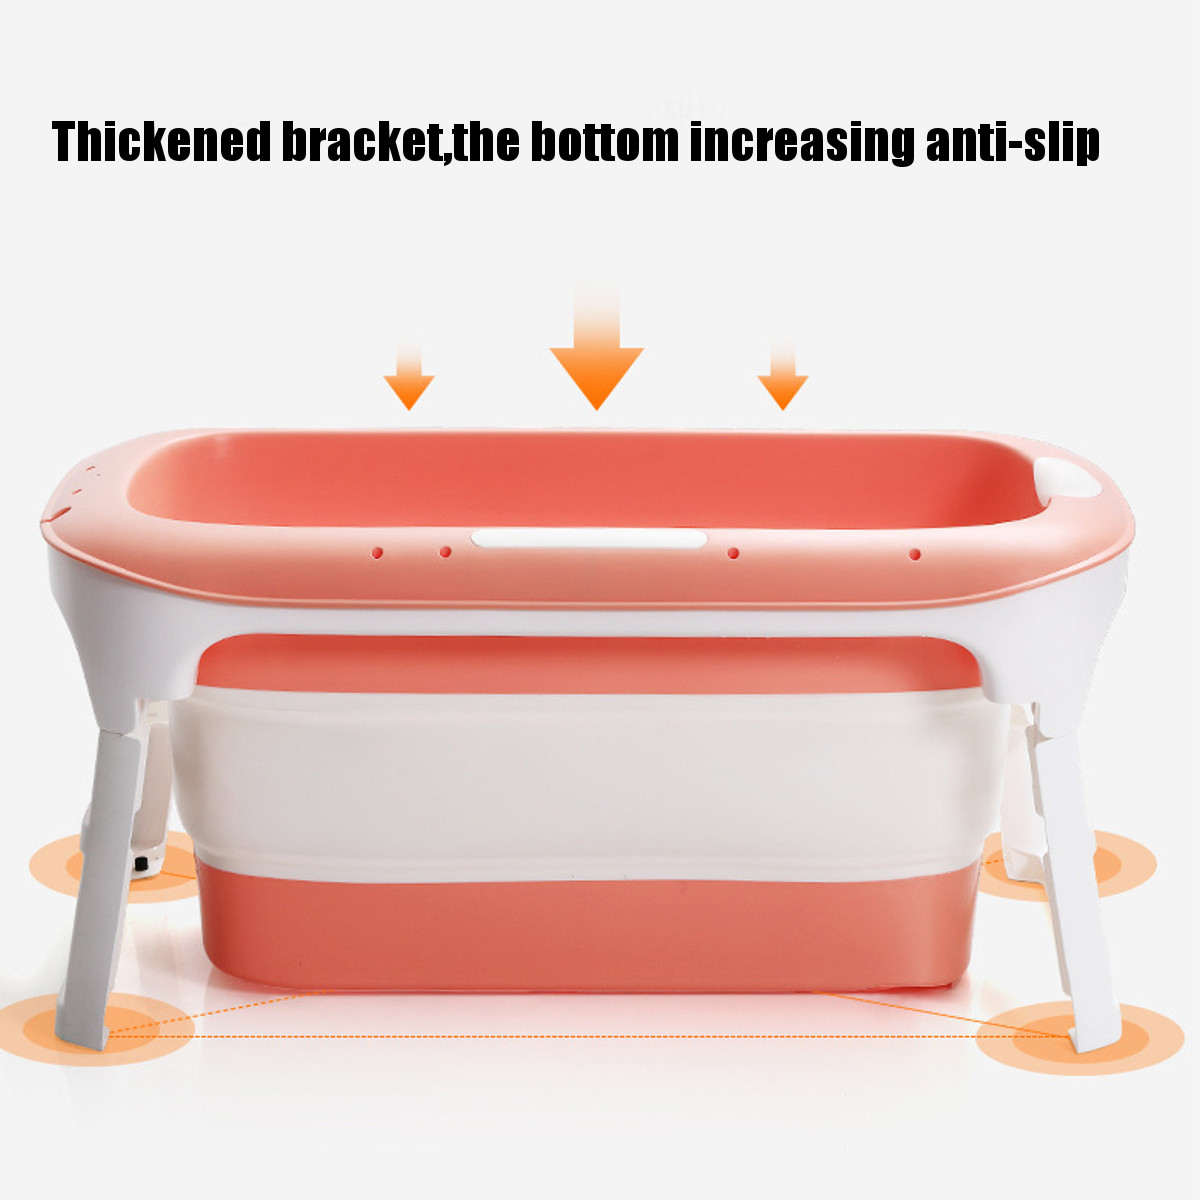 114x86x60cm-Folding-Bathtub-Bath-Barrel-Soaking-Tub-Large-Capacity-For-Baby-Child-Adult-Bathtub-1757303